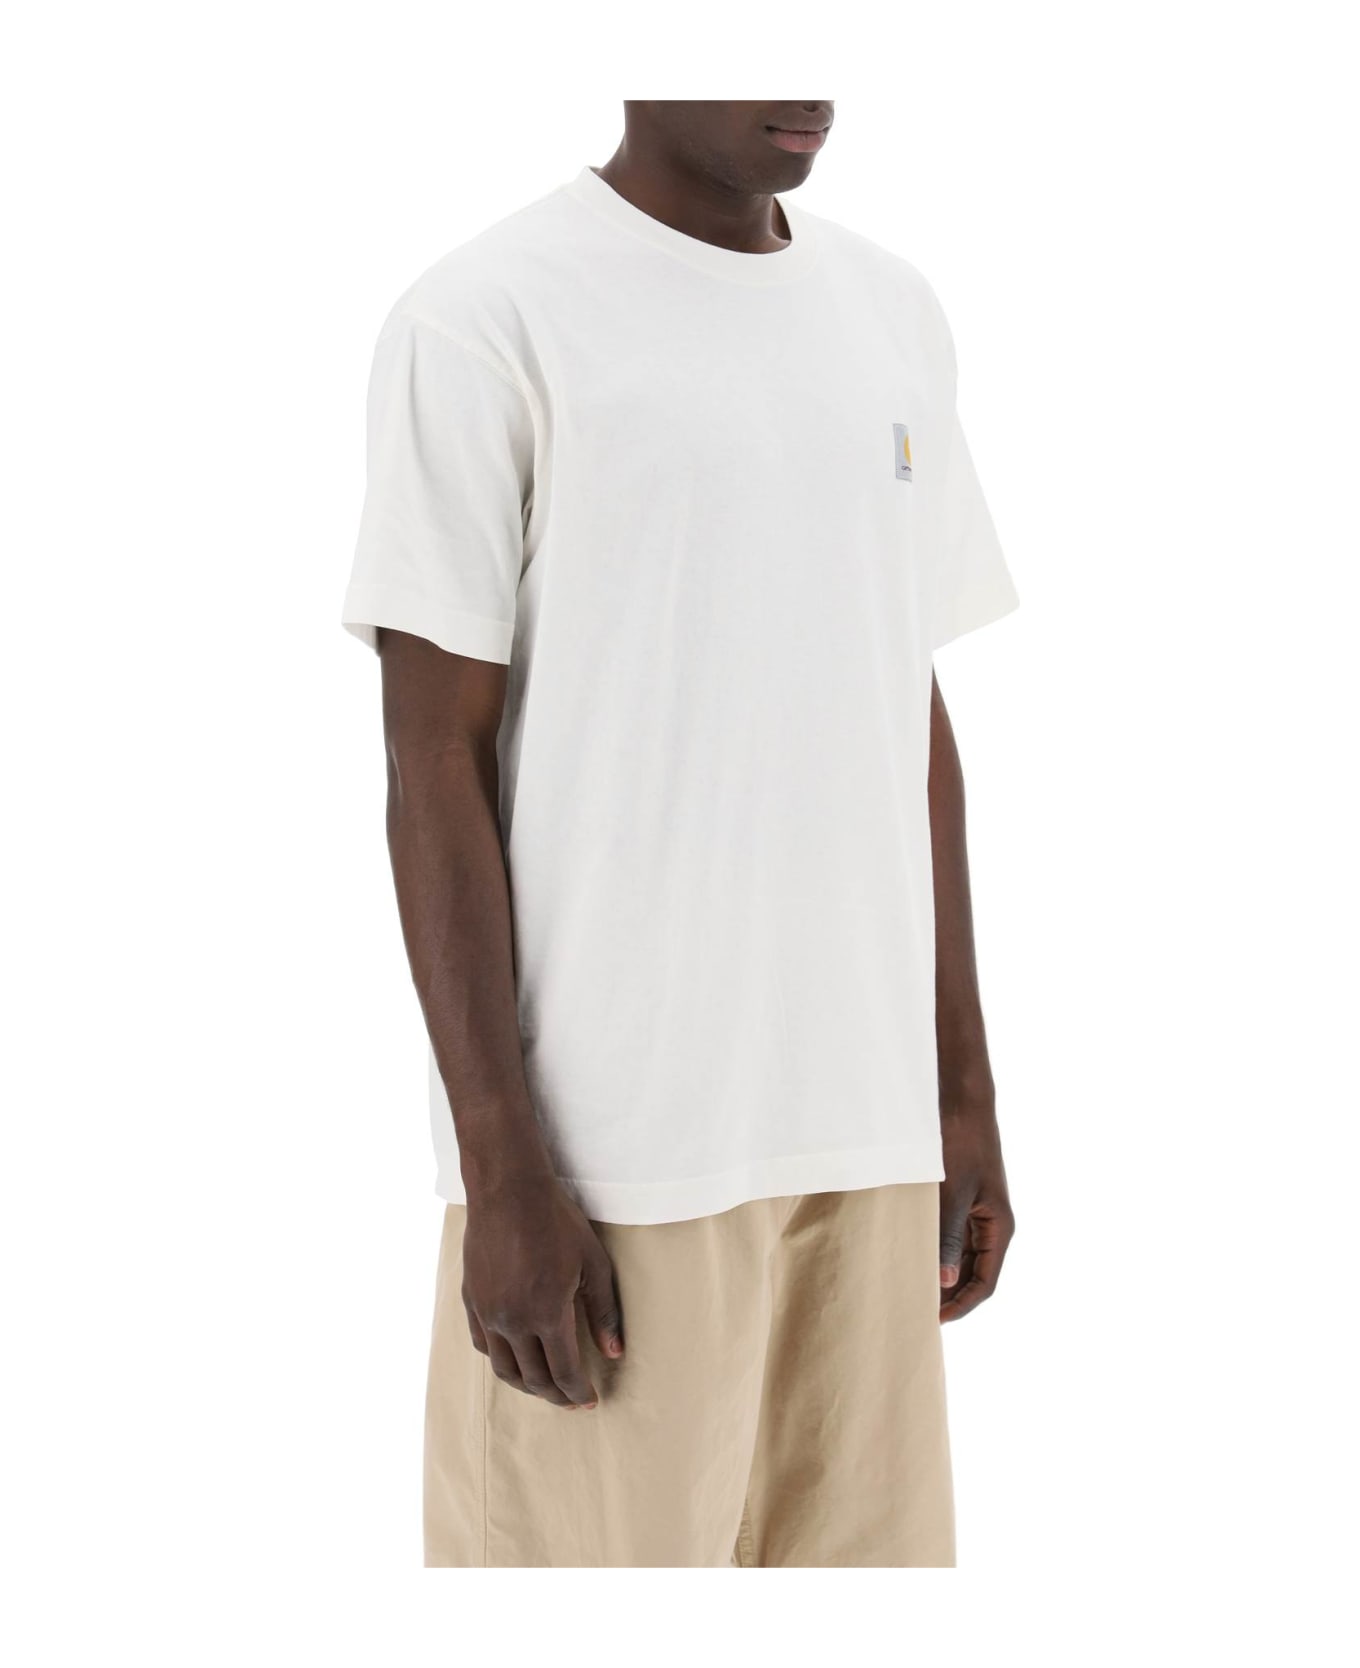 Carhartt Nelson T-shirt - WAX (White)